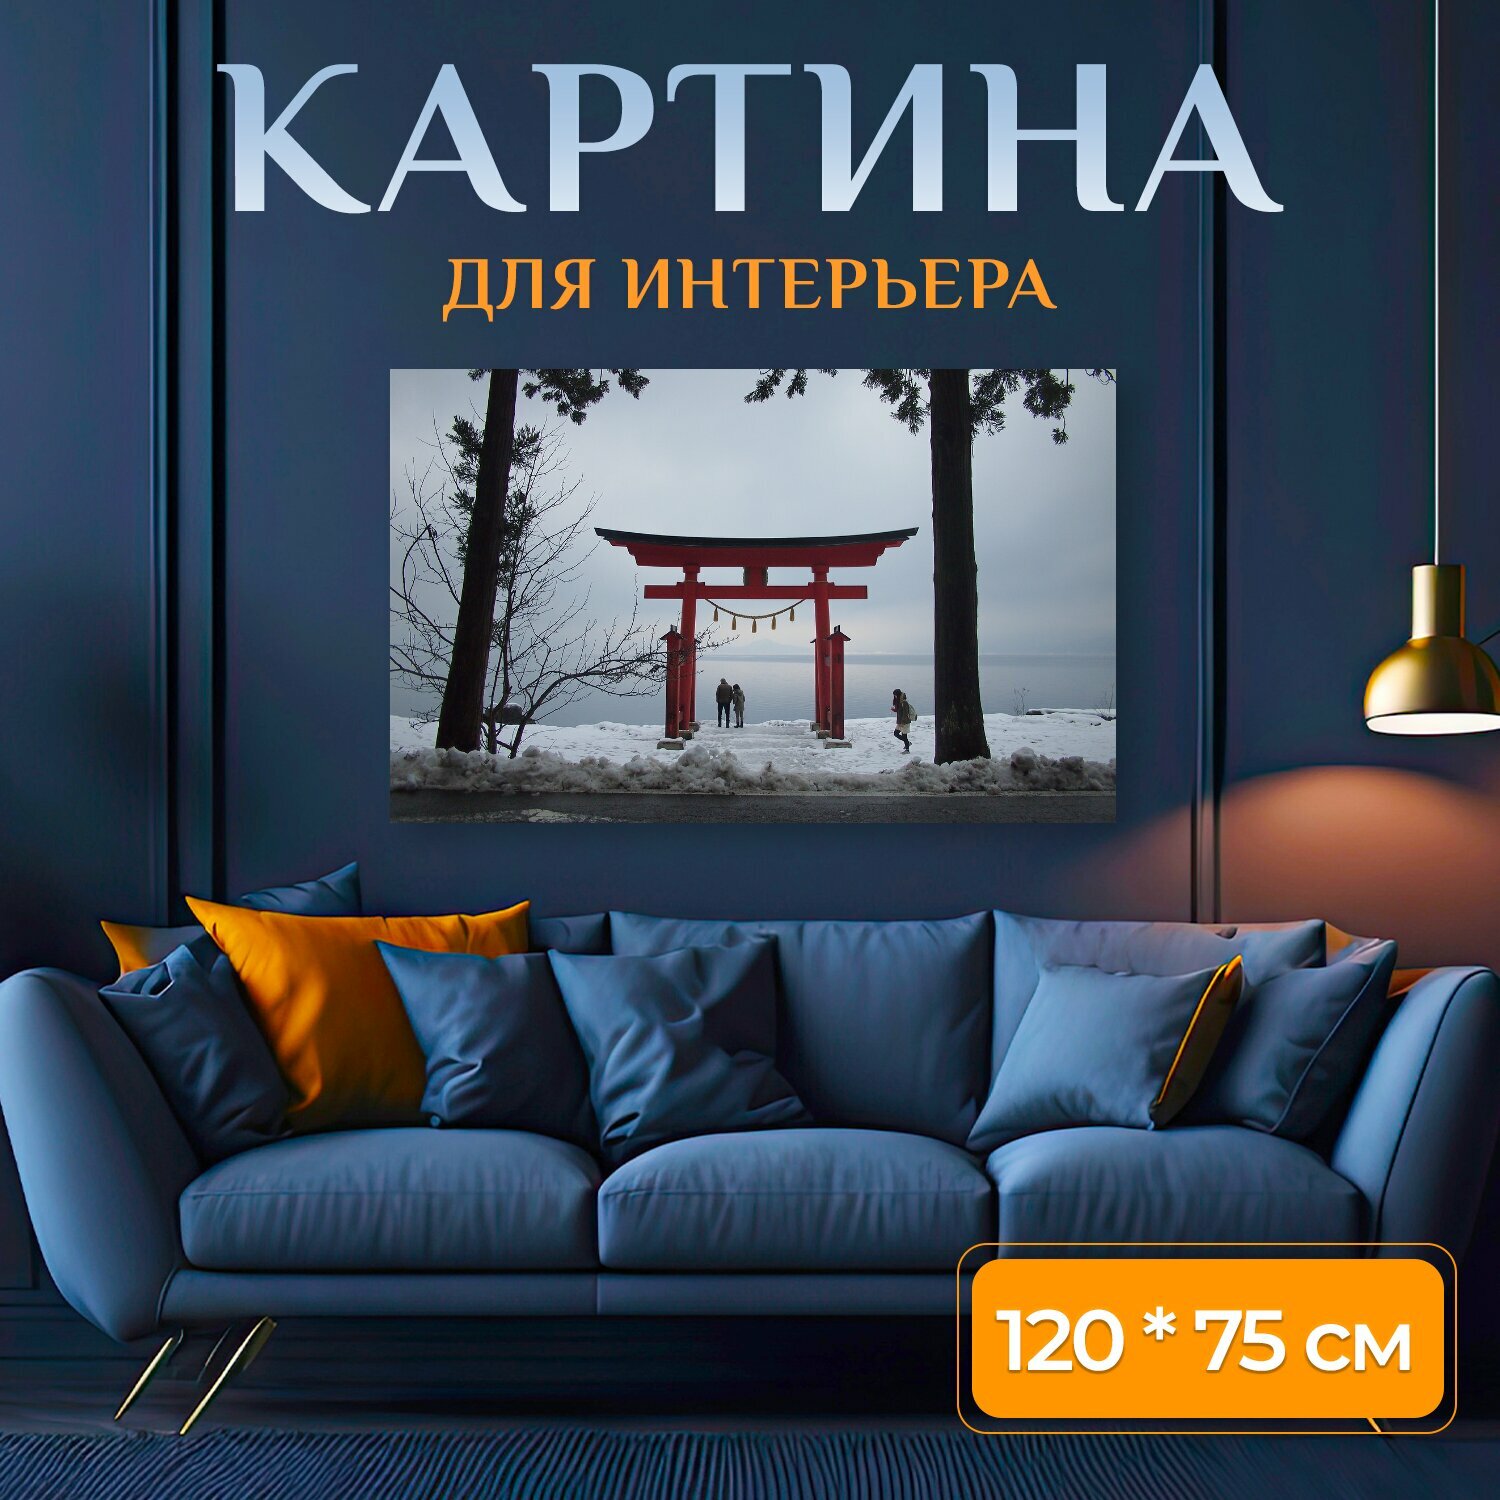 Картина на холсте "Япония, акита, тохоку" на подрамнике 120х75 см. для интерьера